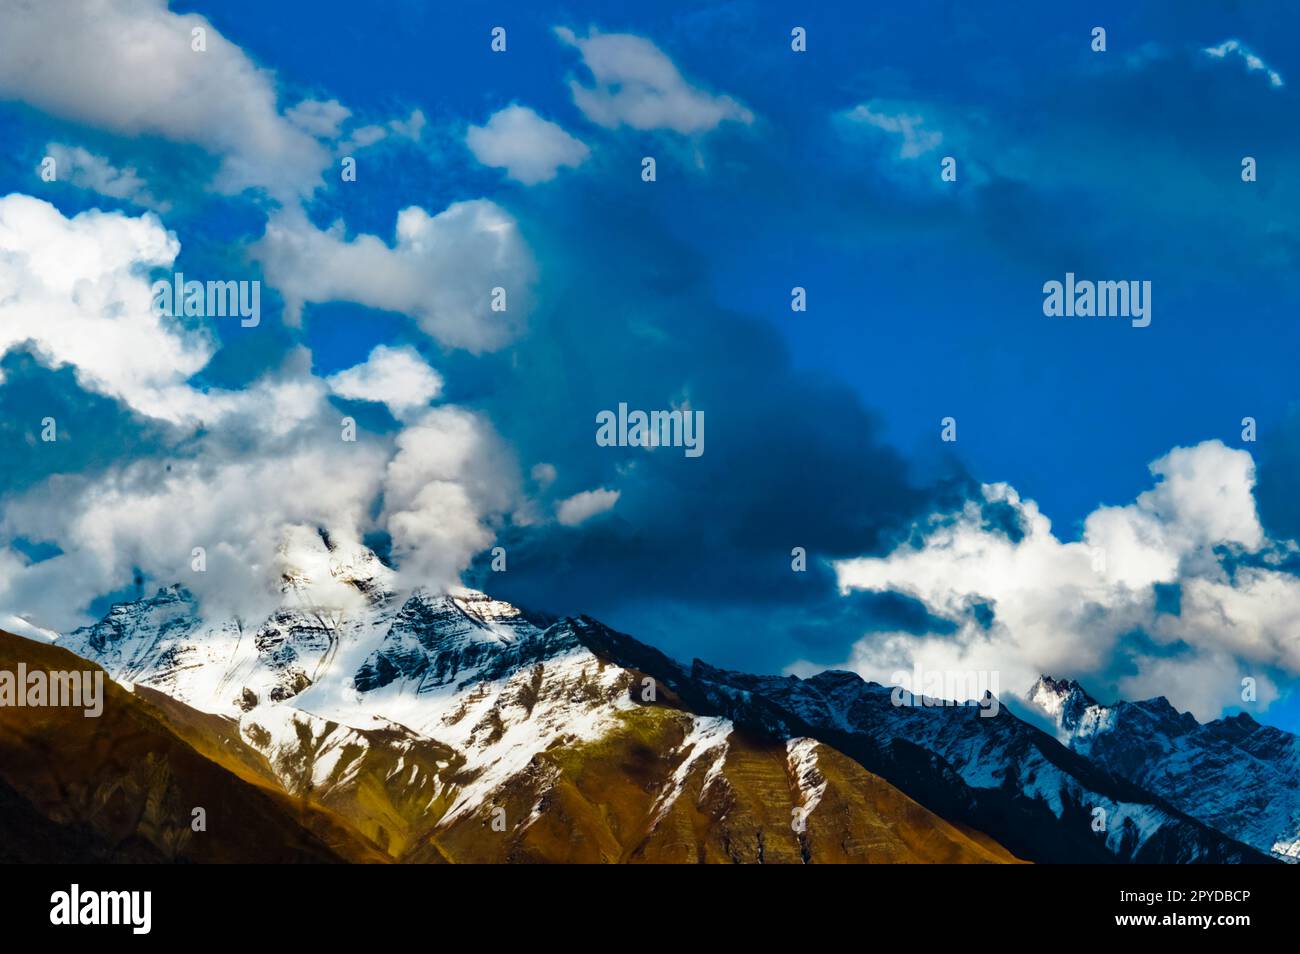 Schneebedeckte Bergspitze mit blauem Himmel und schwimmenden Wolken. Dramatische Naturlandschaft. Yungthum Valley Sikkim Indien Südasiatisch-pazifischer Raum Stockfoto